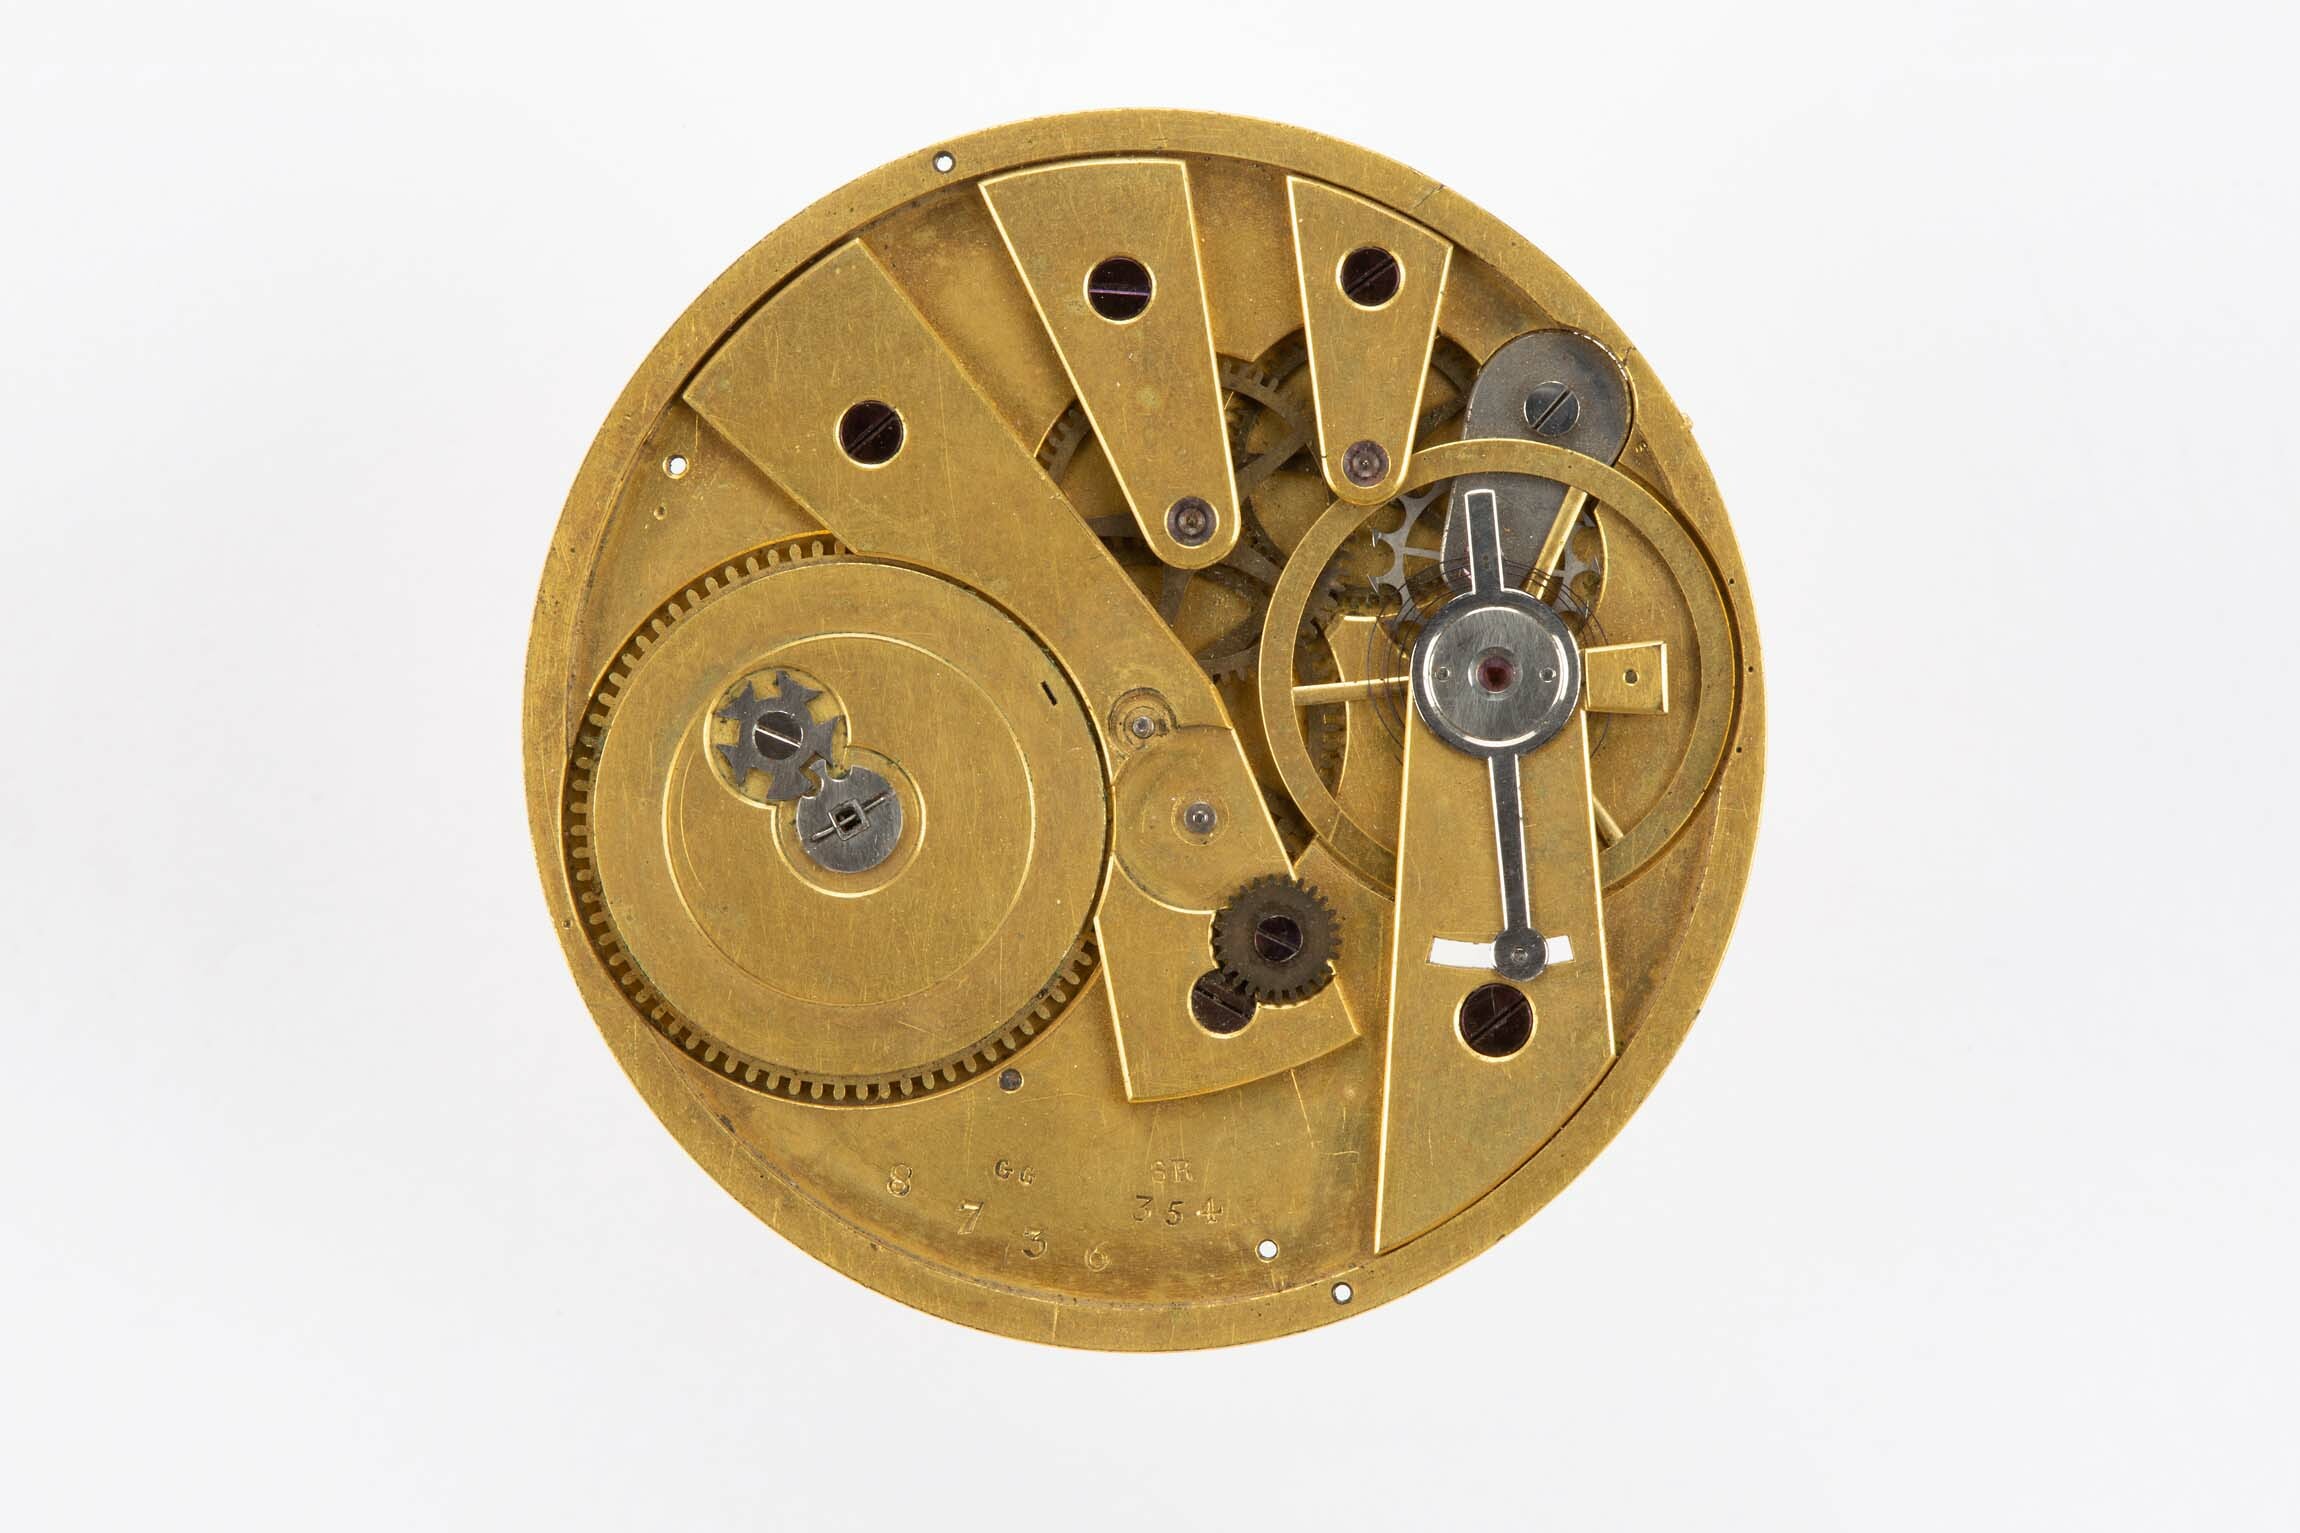 Taschenuhrwerk, Bauart Bagnolet, wohl Schweiz, um 1850 (Deutsches Uhrenmuseum CC BY-SA)